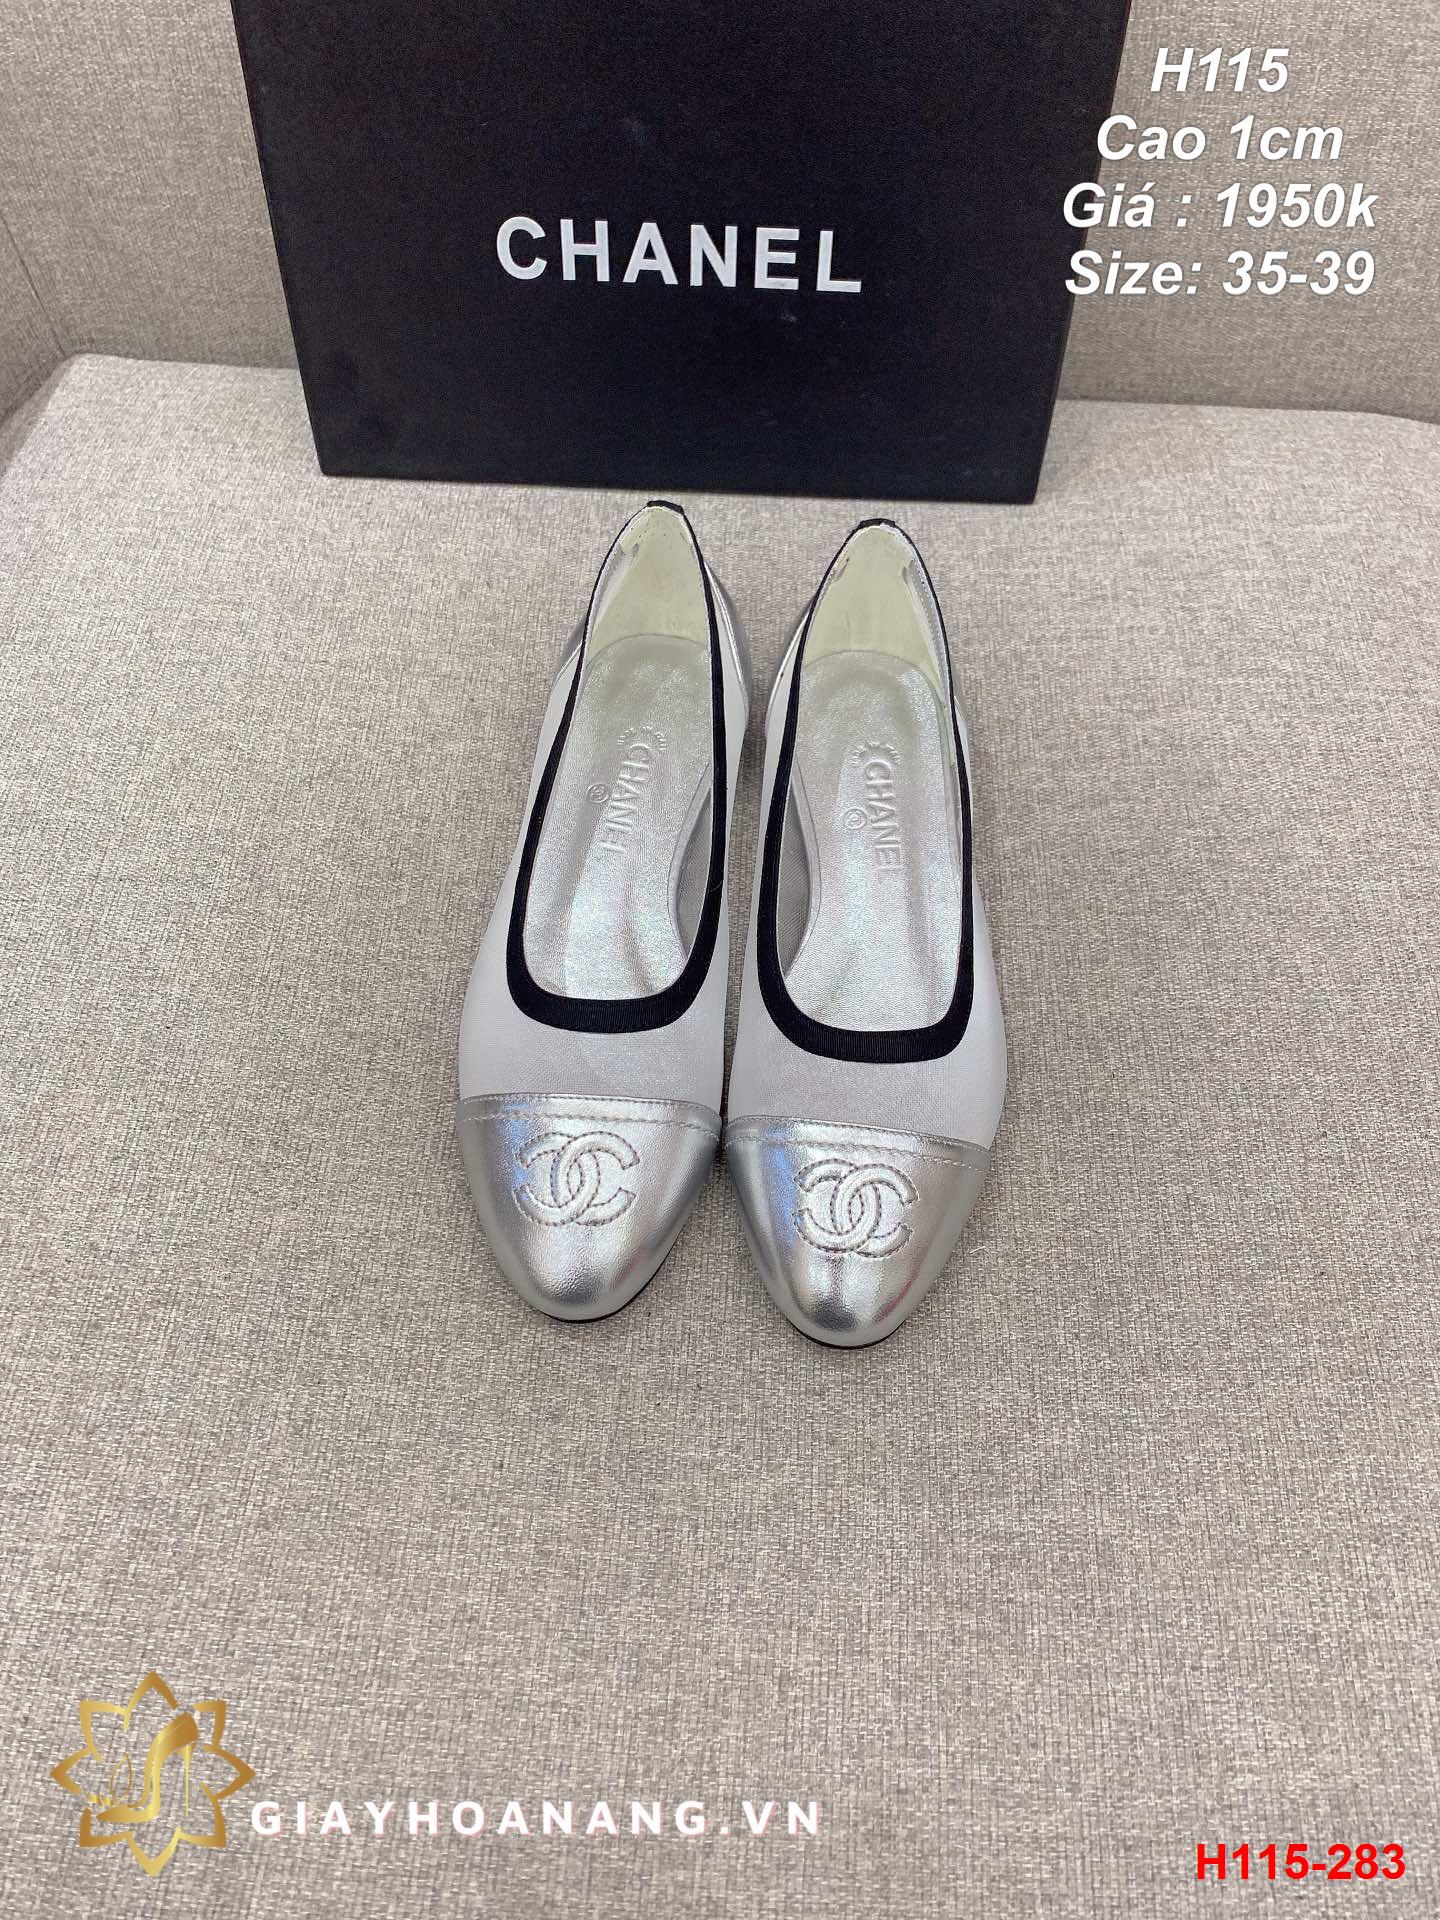 H115-283 Chanel giày cao 1cm siêu cấp